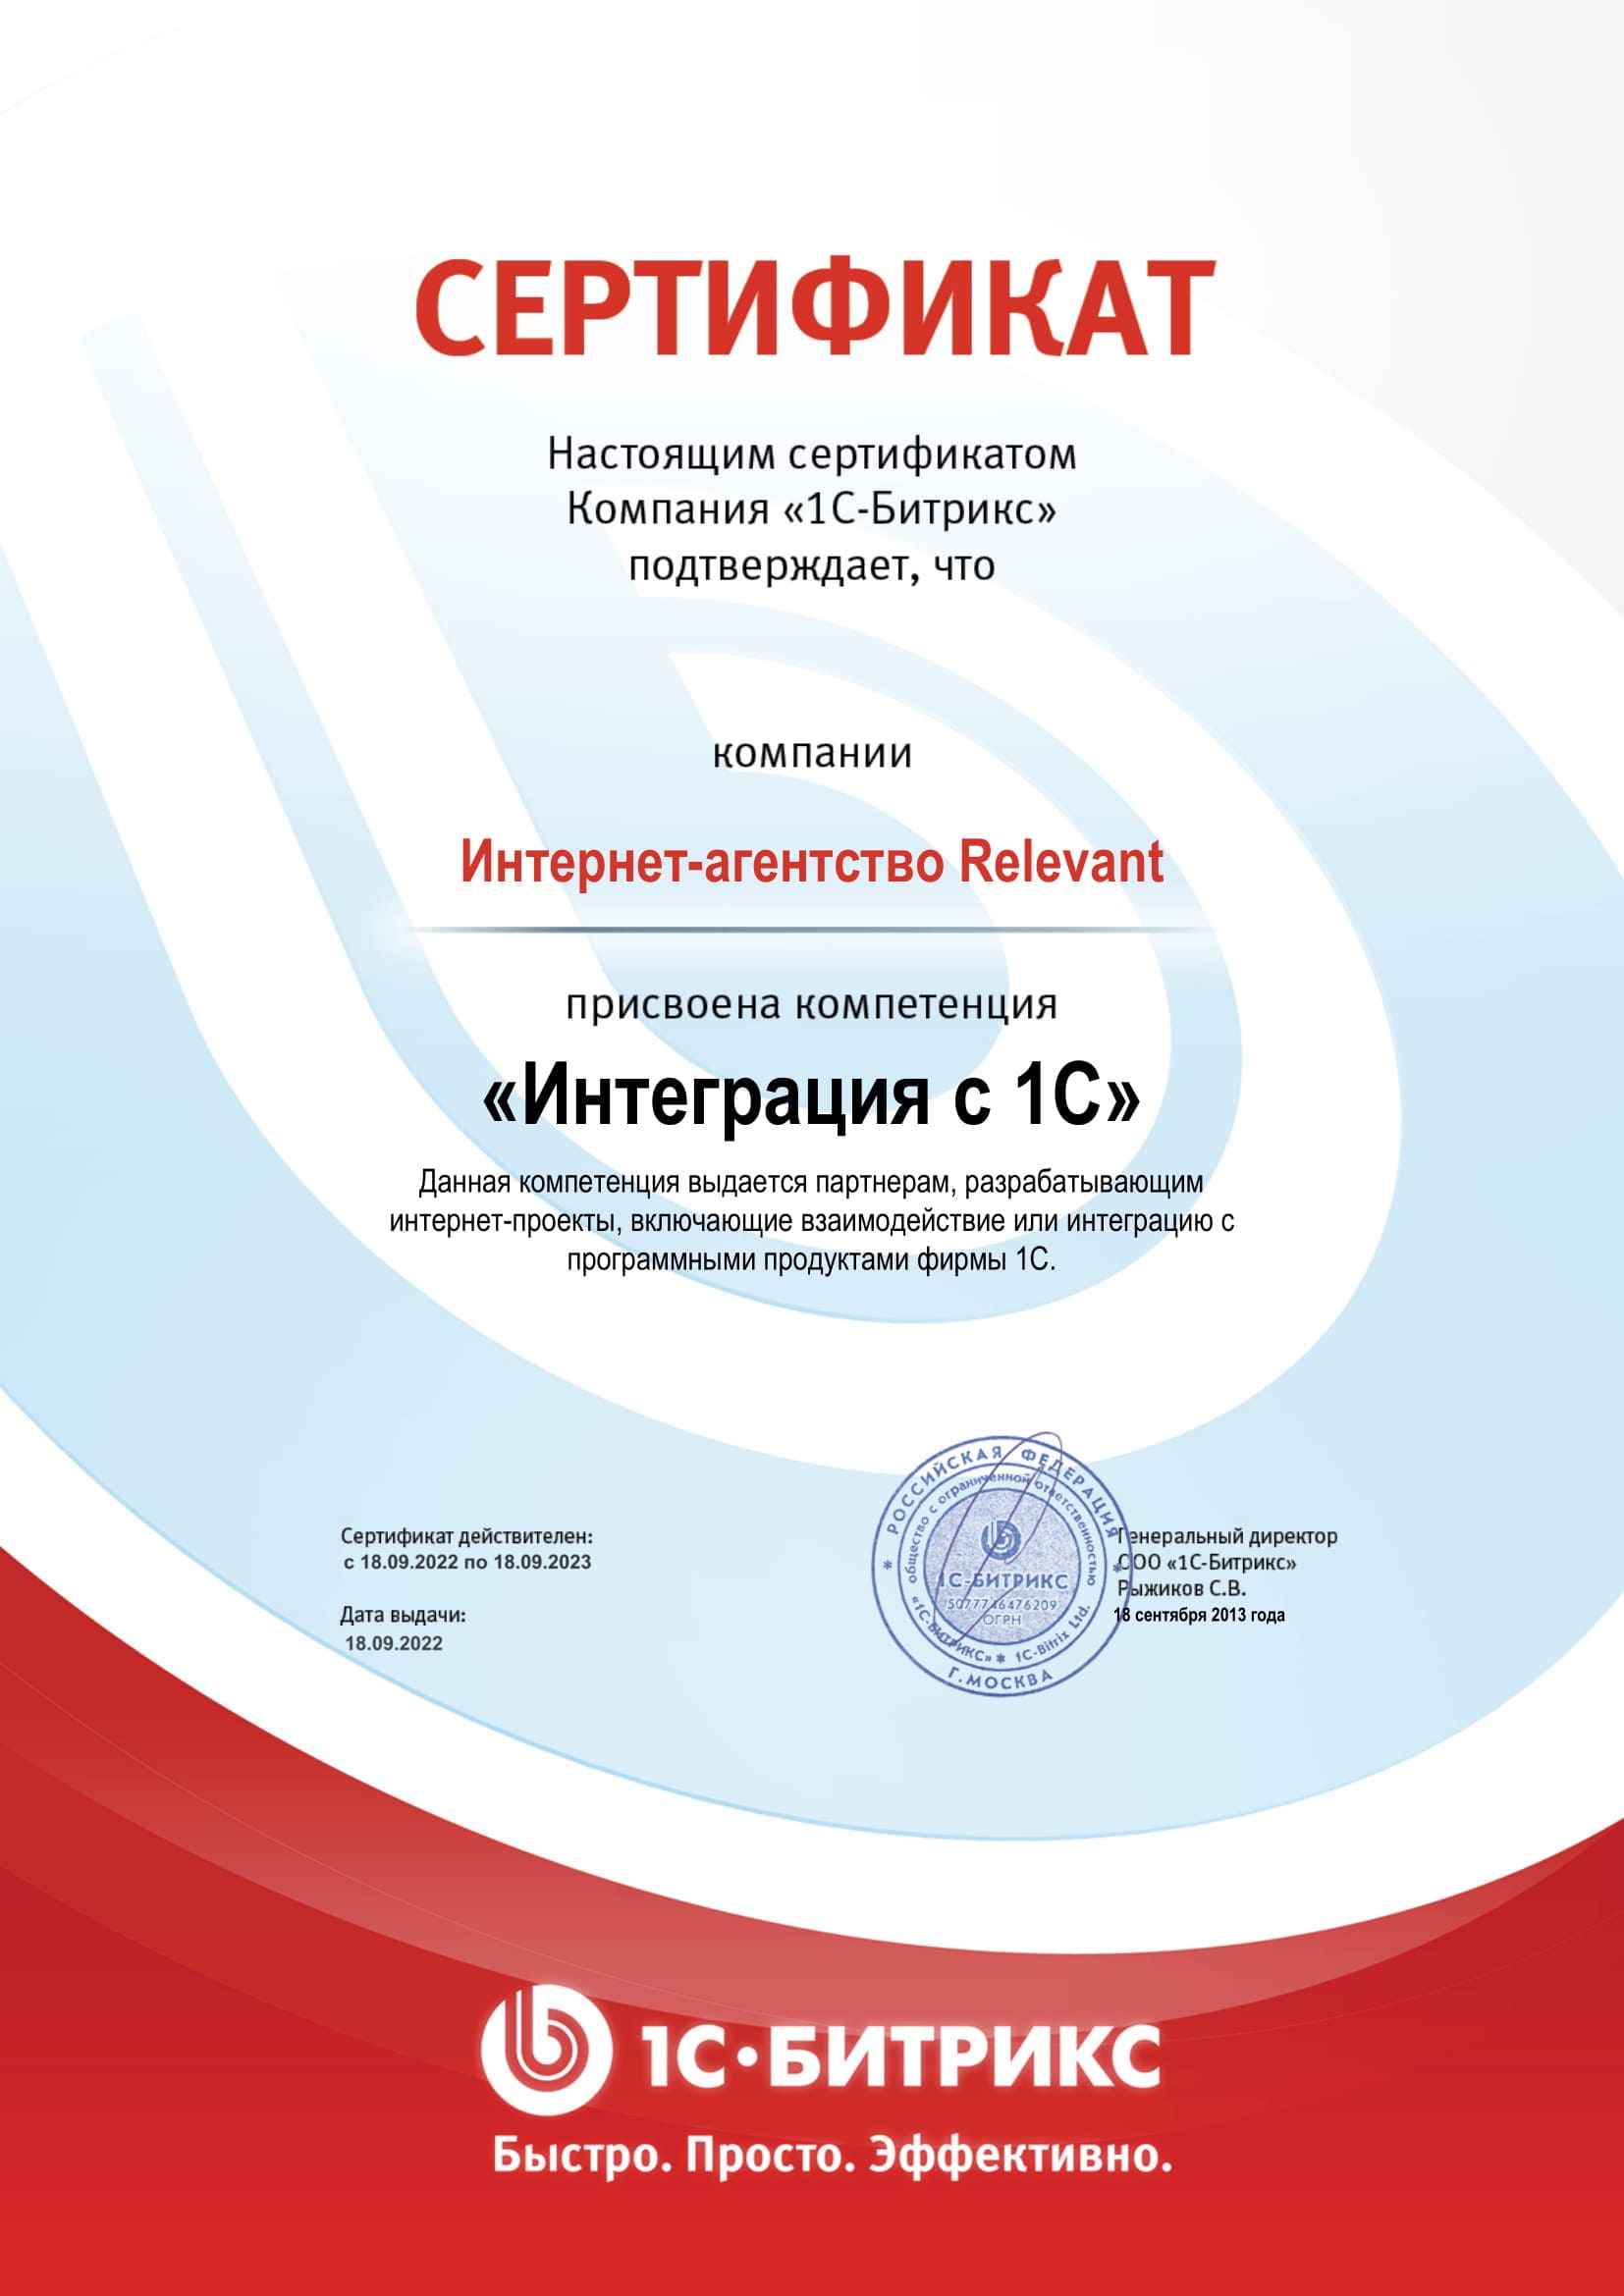 Сертификат о присвоении компетенции "Интеграция с 1С"